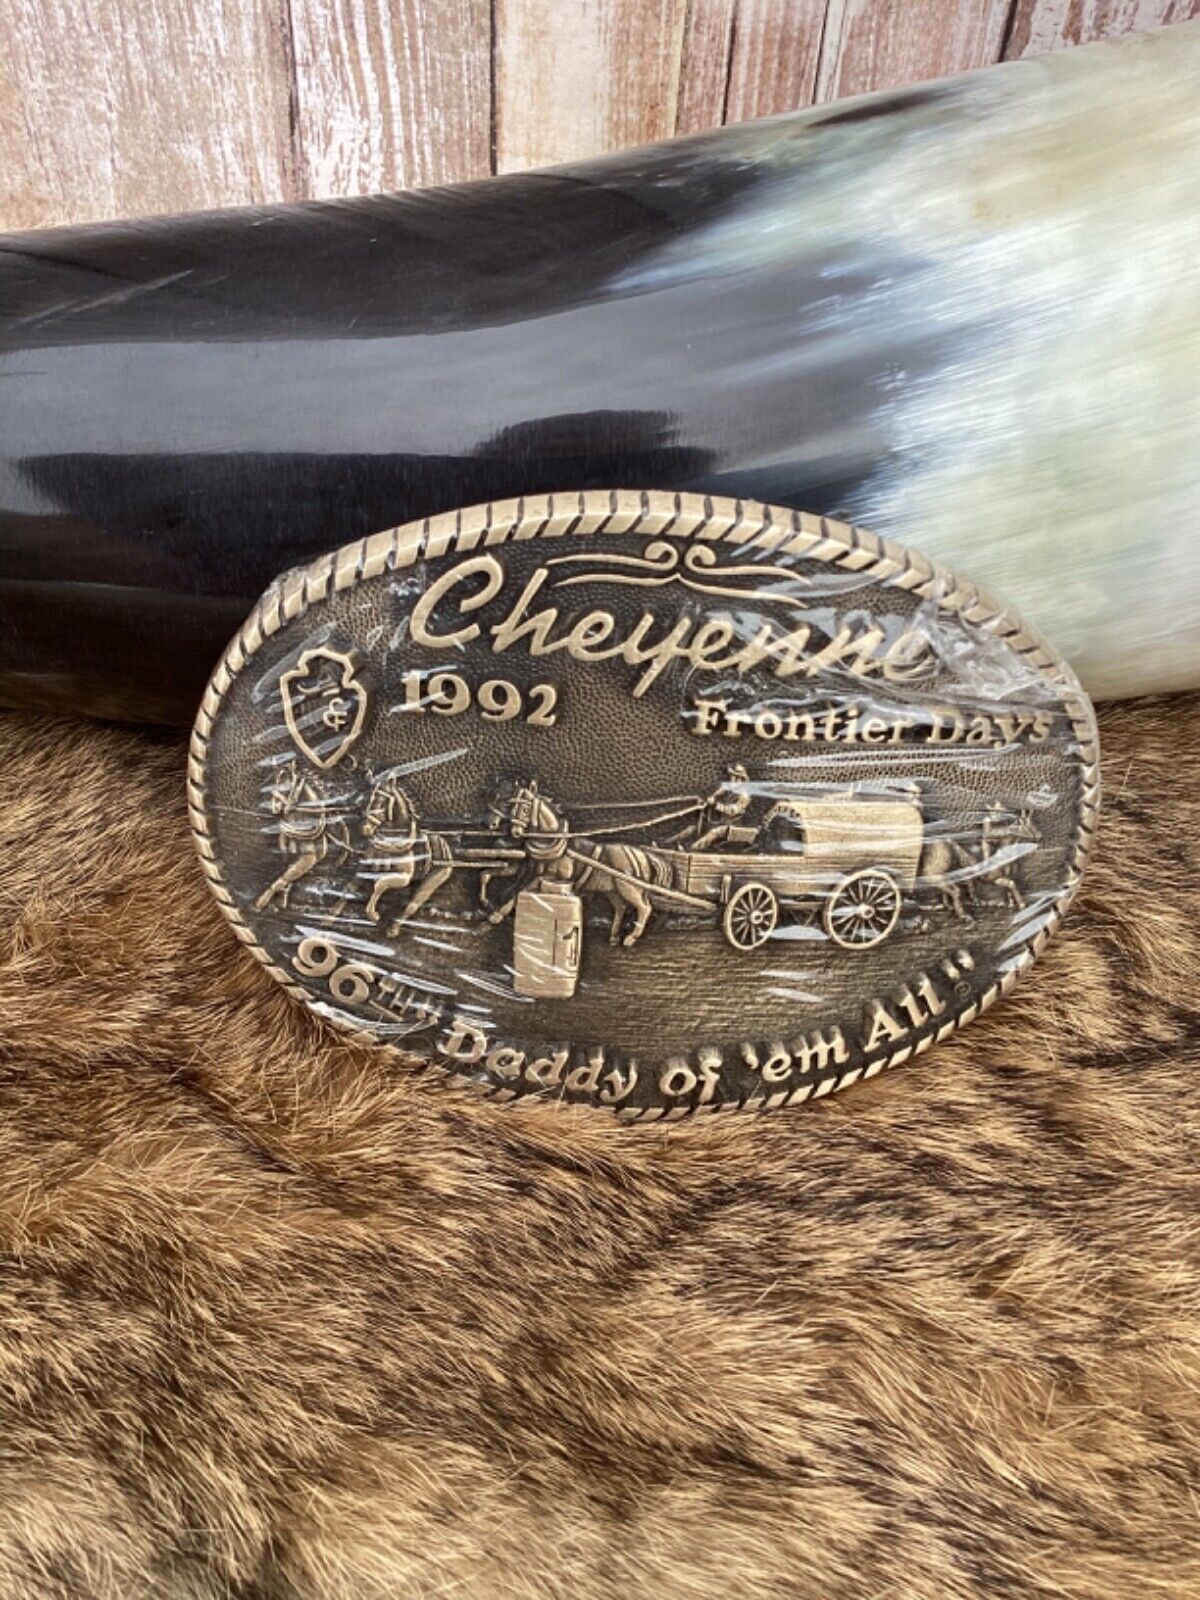 Vintage 1992 Cheyenne Frontier Days Brass Belt Buckle Ltd Edition #599 96th Year